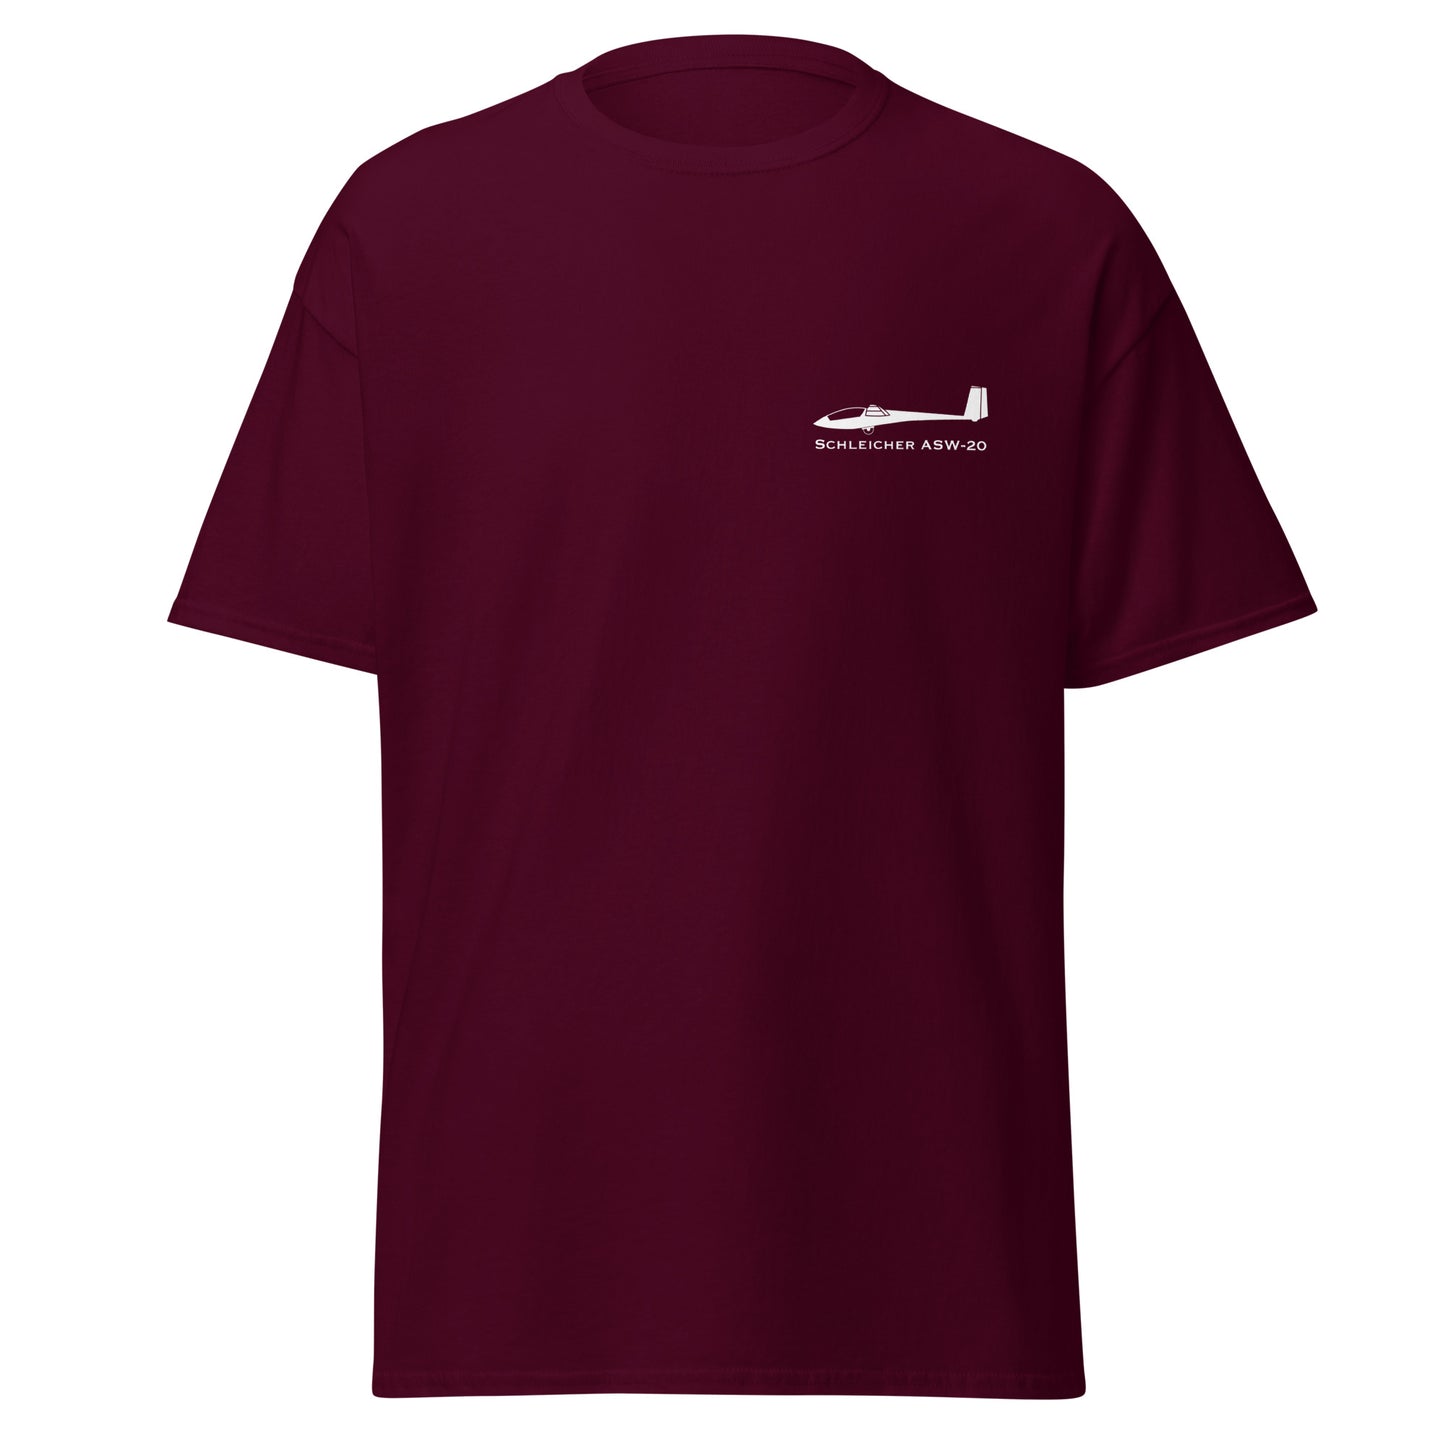 Schleicher ASW-20 Airplane Unisex T-Shirt